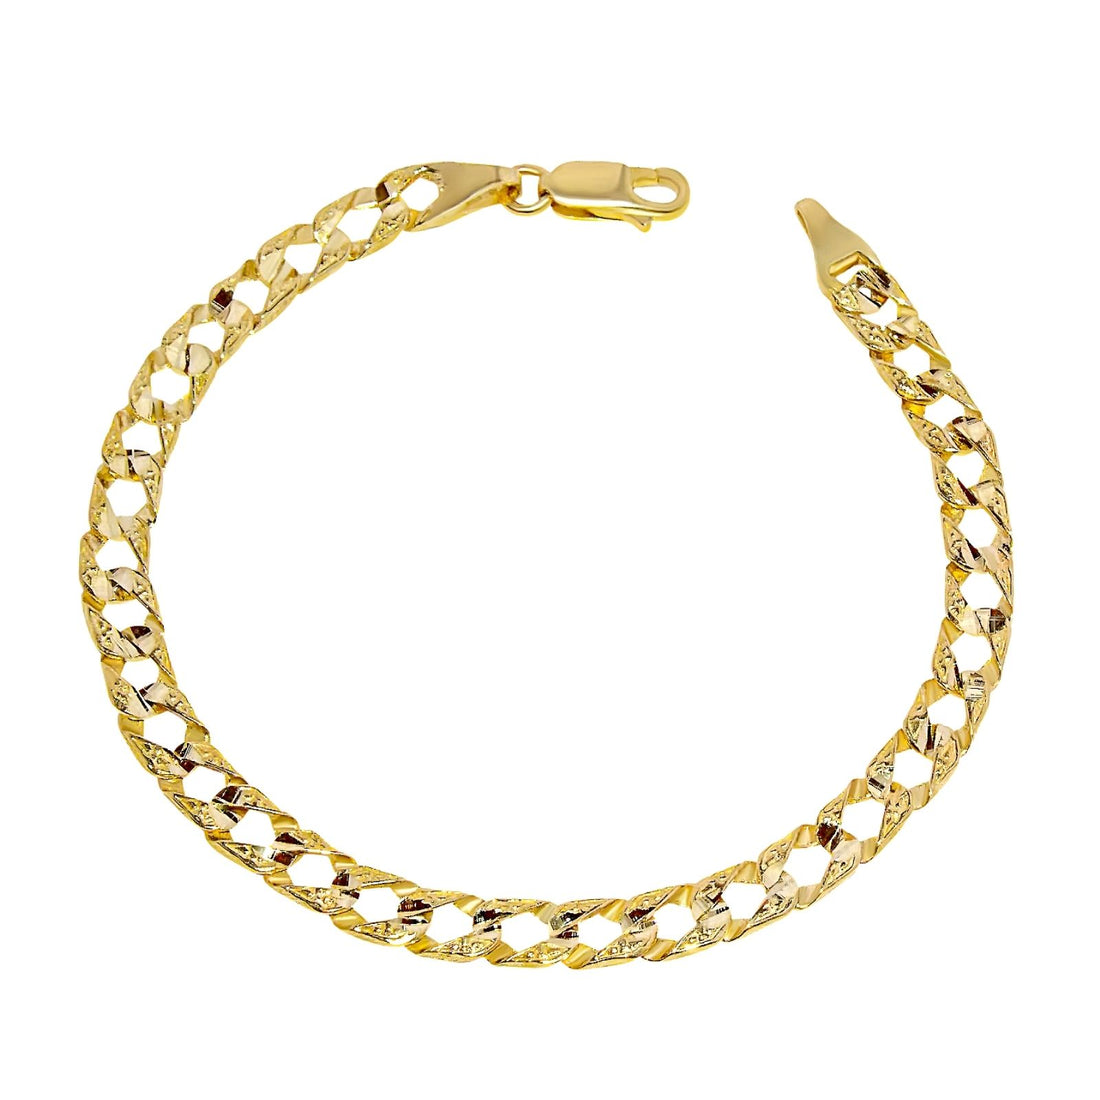 gold bracelet for men, mens gold bracelets canada, gold bracelet canada